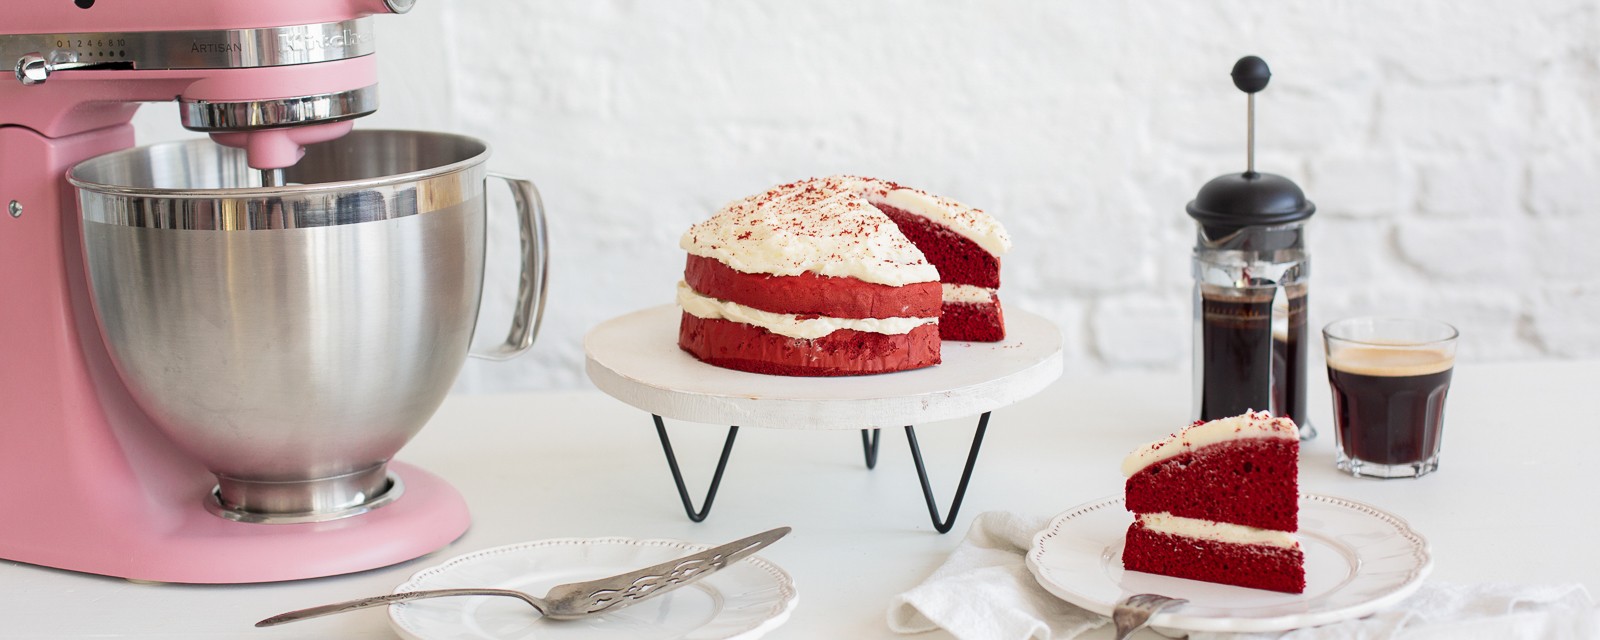 Import-Recipe - Red velvet cake